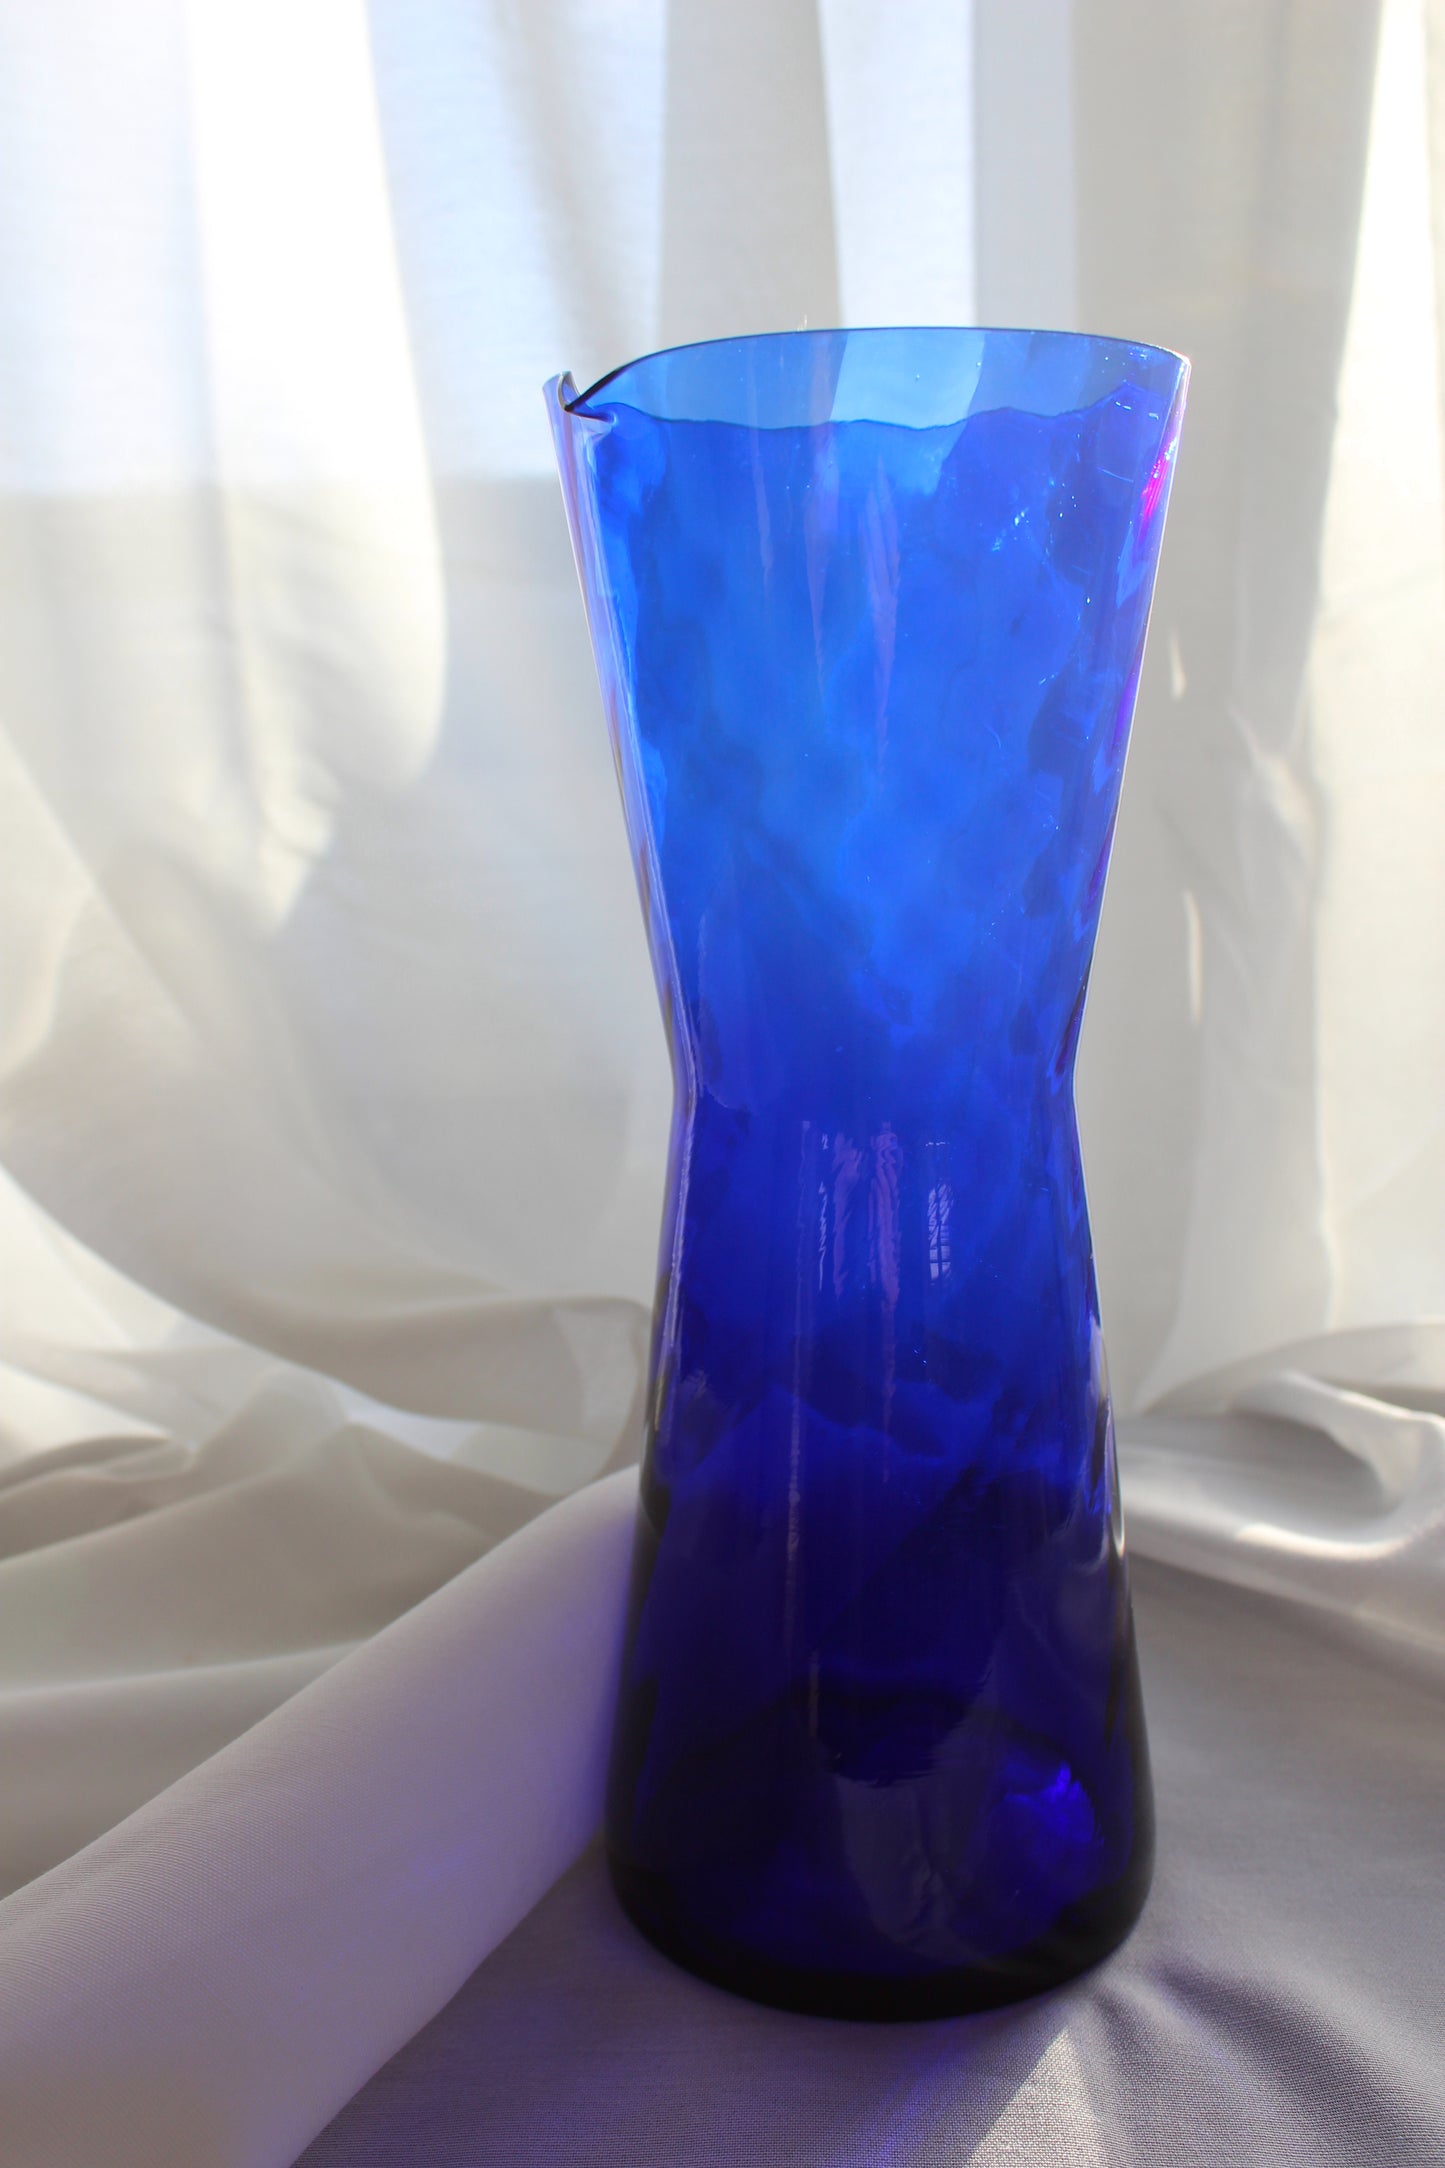 Blue glass jug